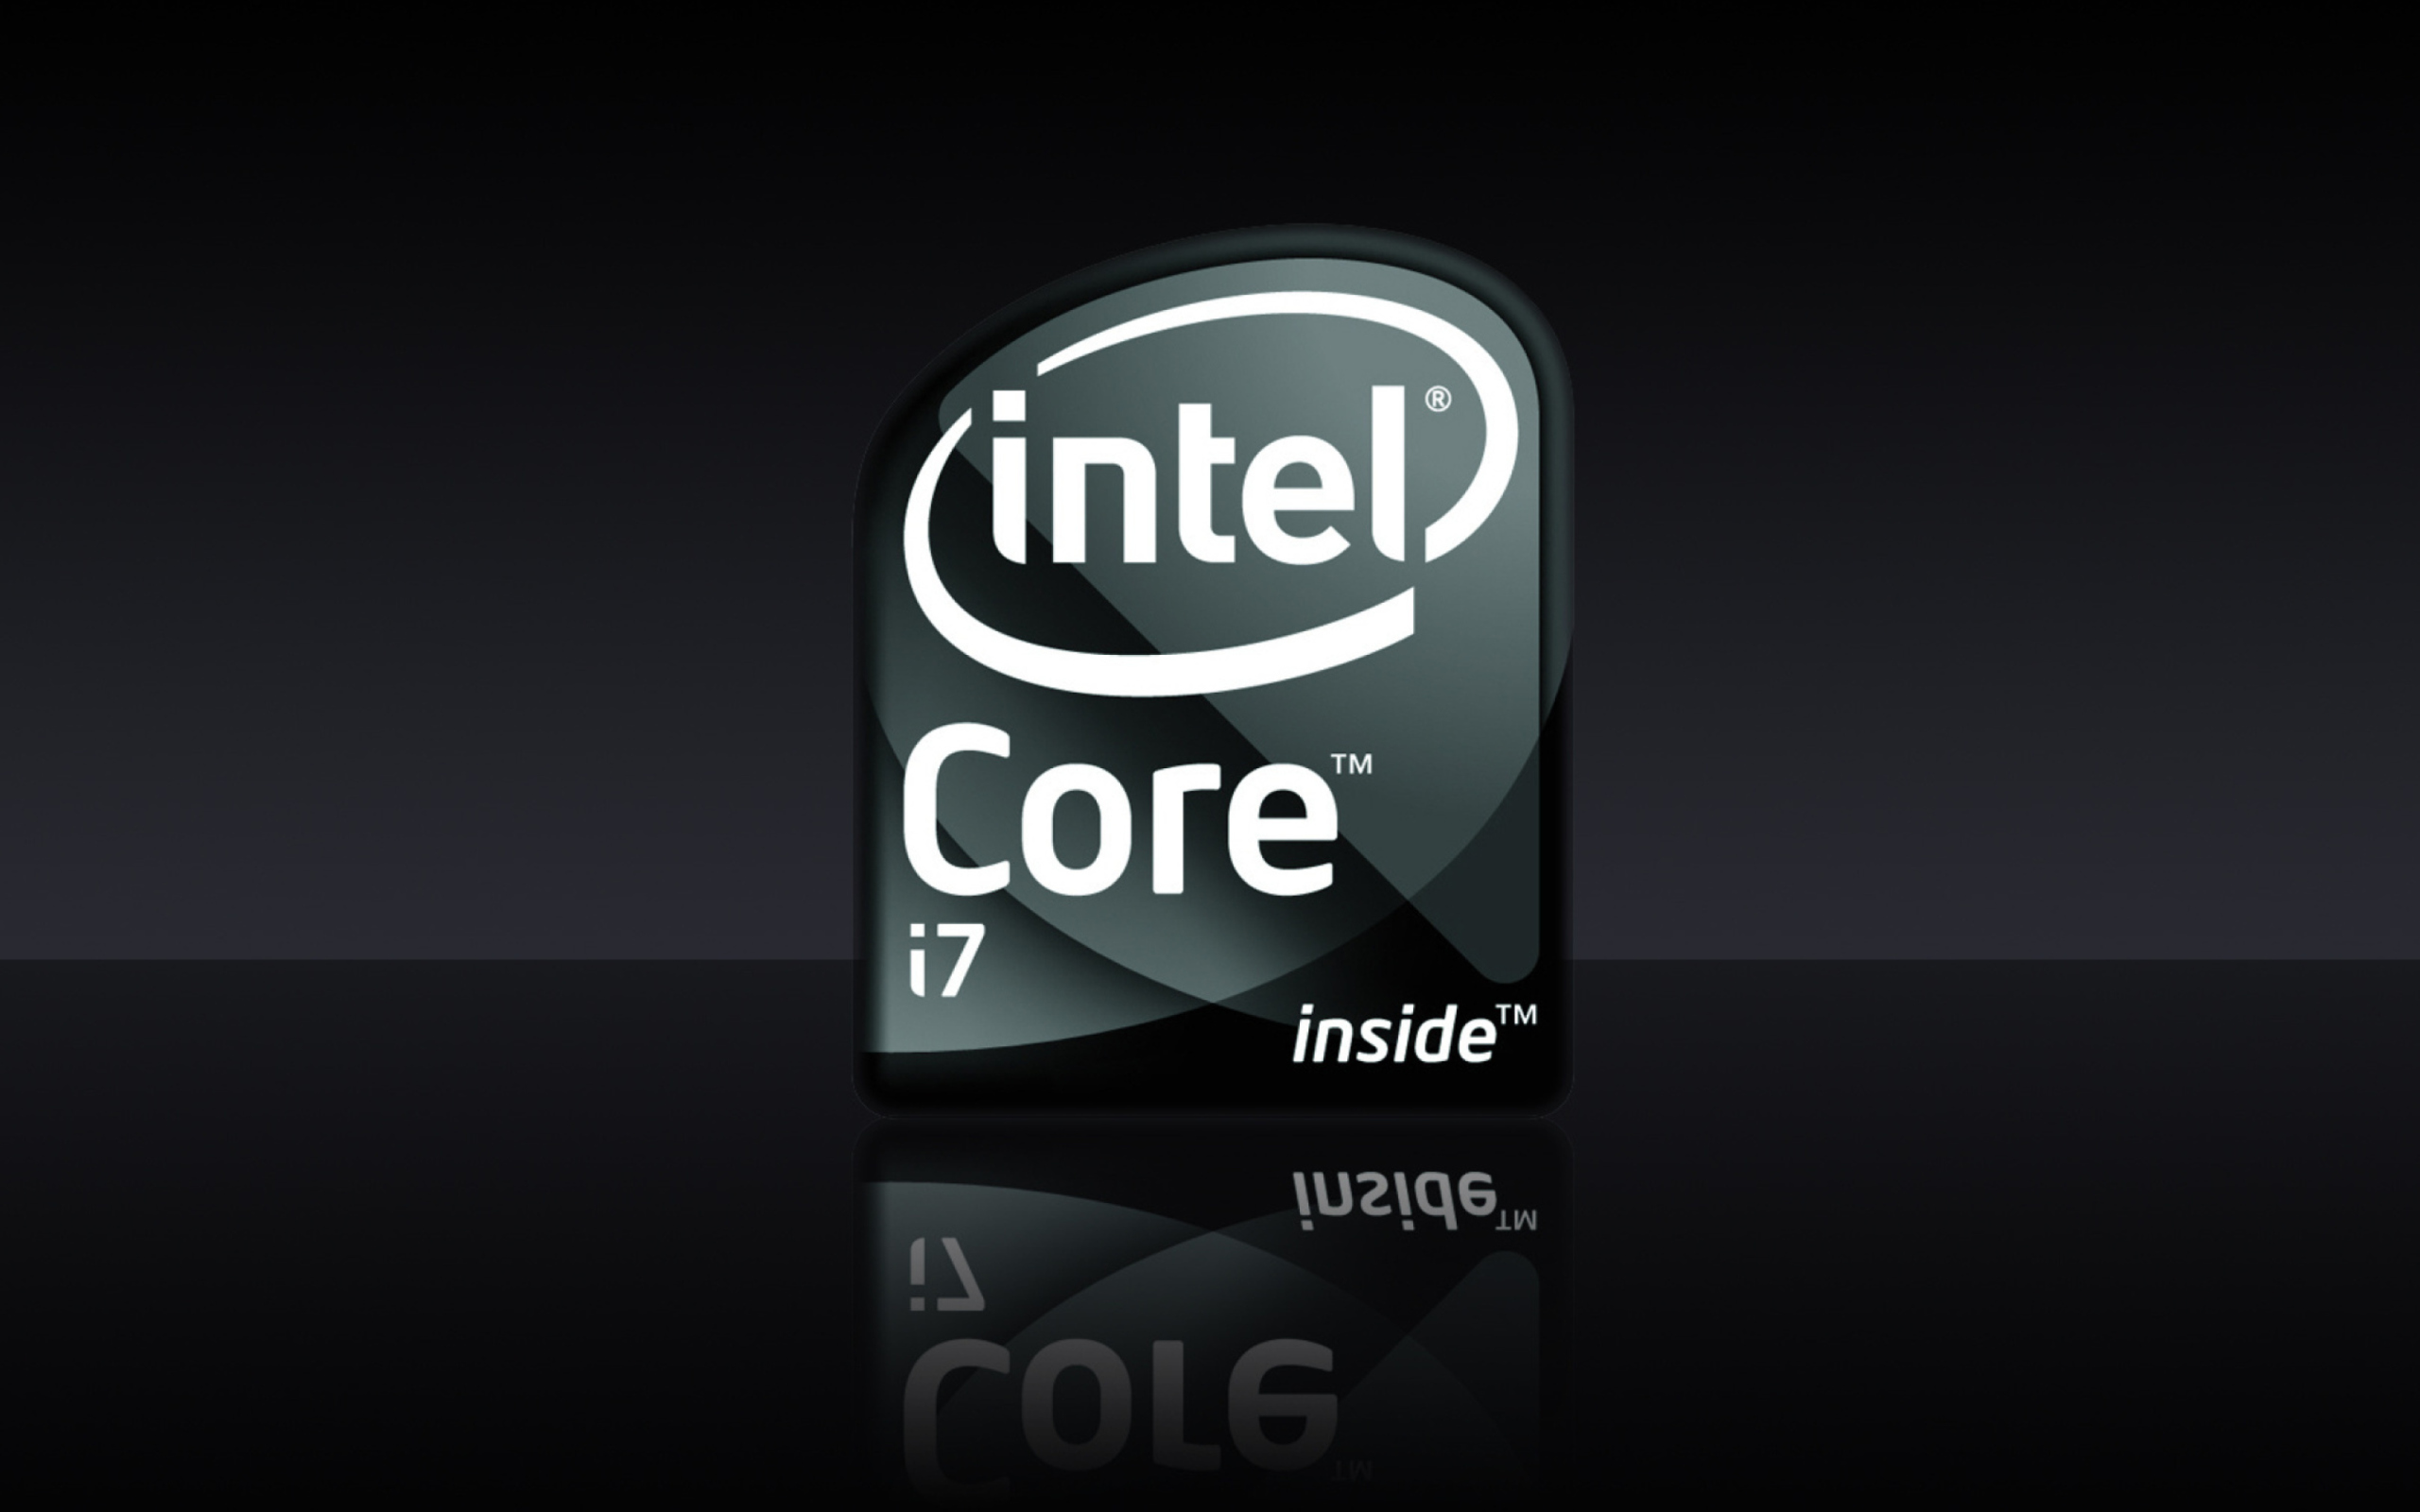 Intel Core I7 wallpaper 2560x1600